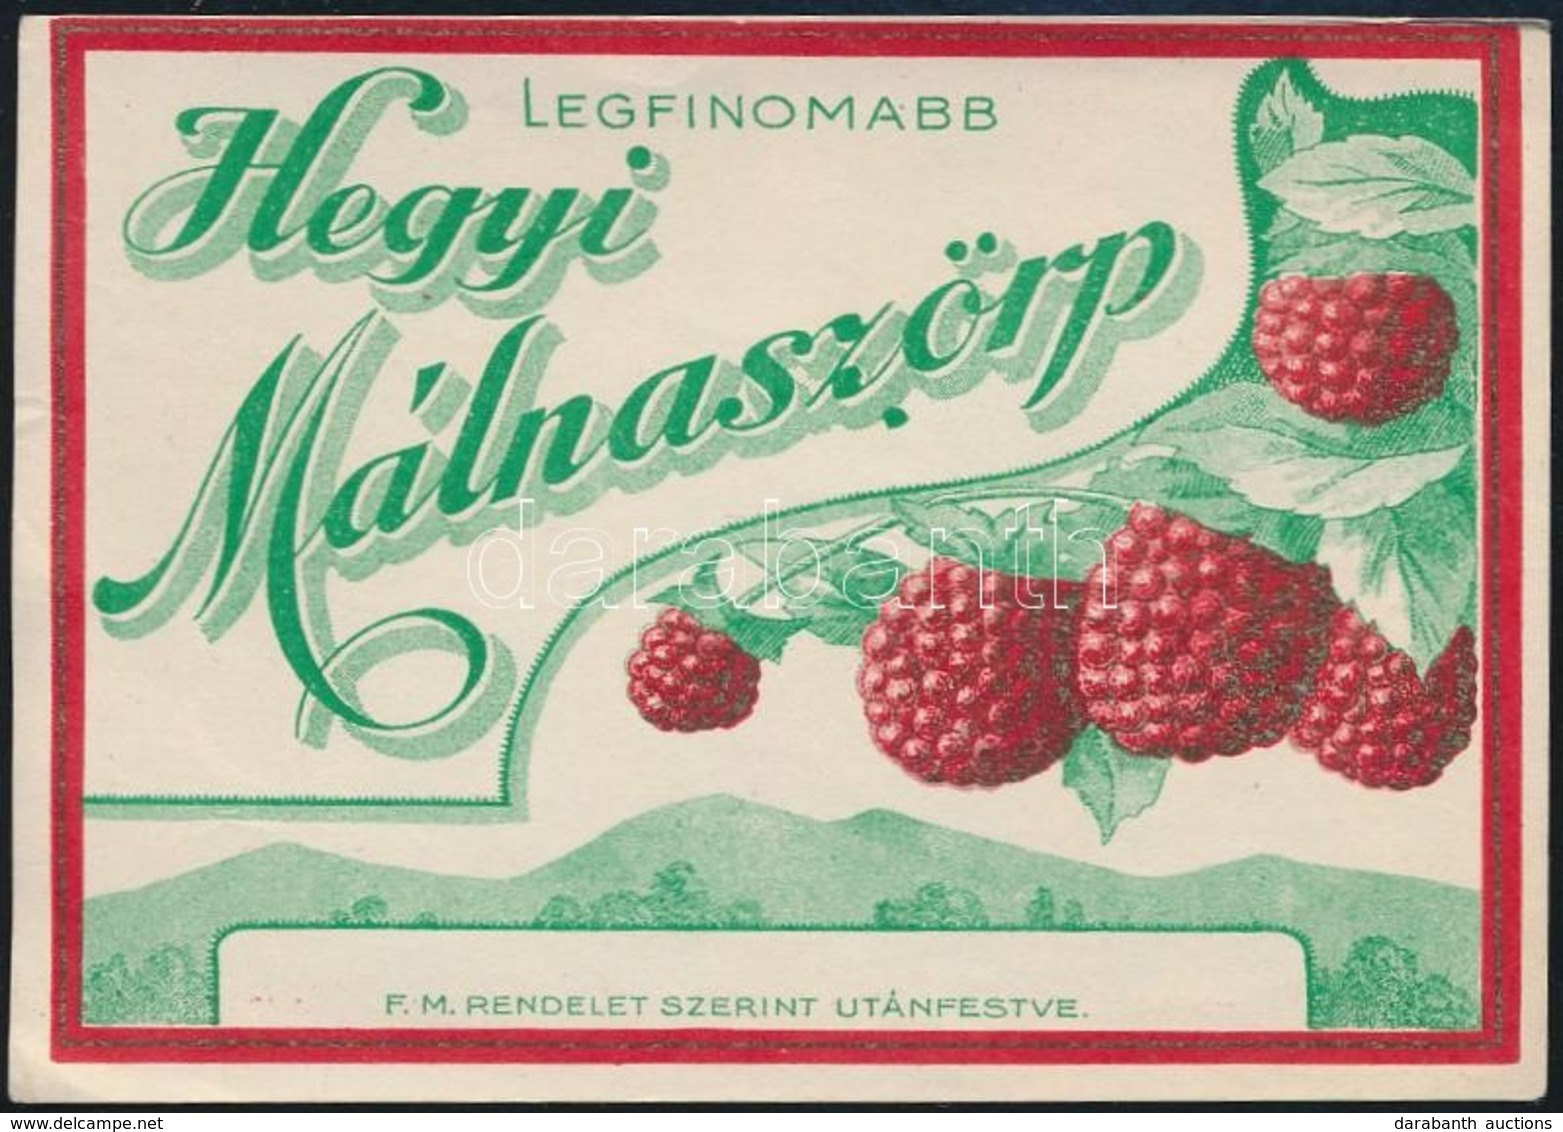 Cca 1920 Legfinomabb Hegyi Málnaszörp Címke, 7x10 Cm - Advertising